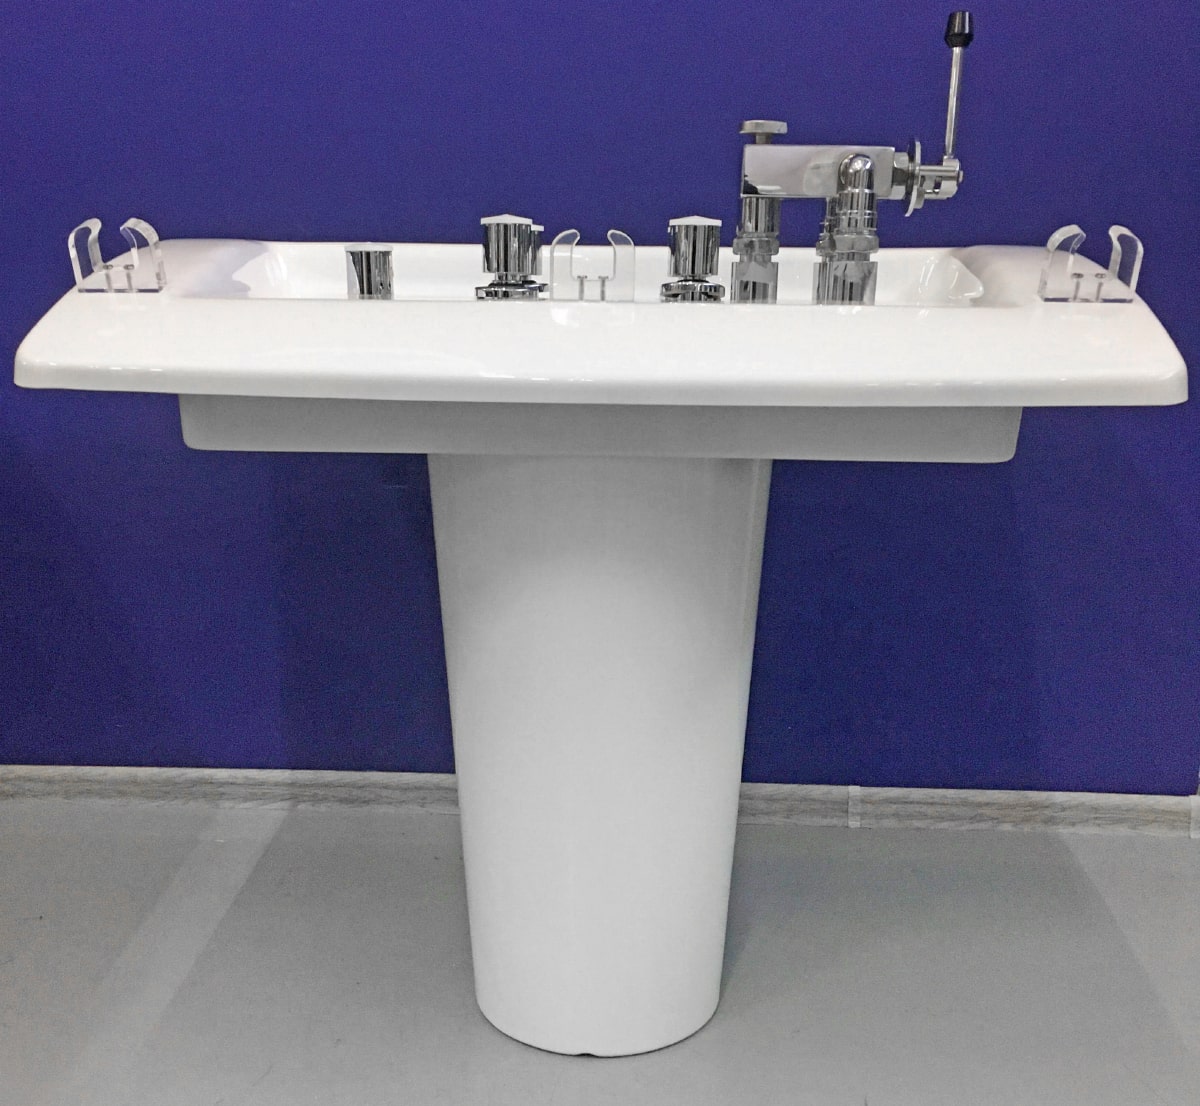 Душевая кафедра - душ Шарко фирмы Trautwein  Модель Kneipp Тип DSK-WD с контрастным душем 2